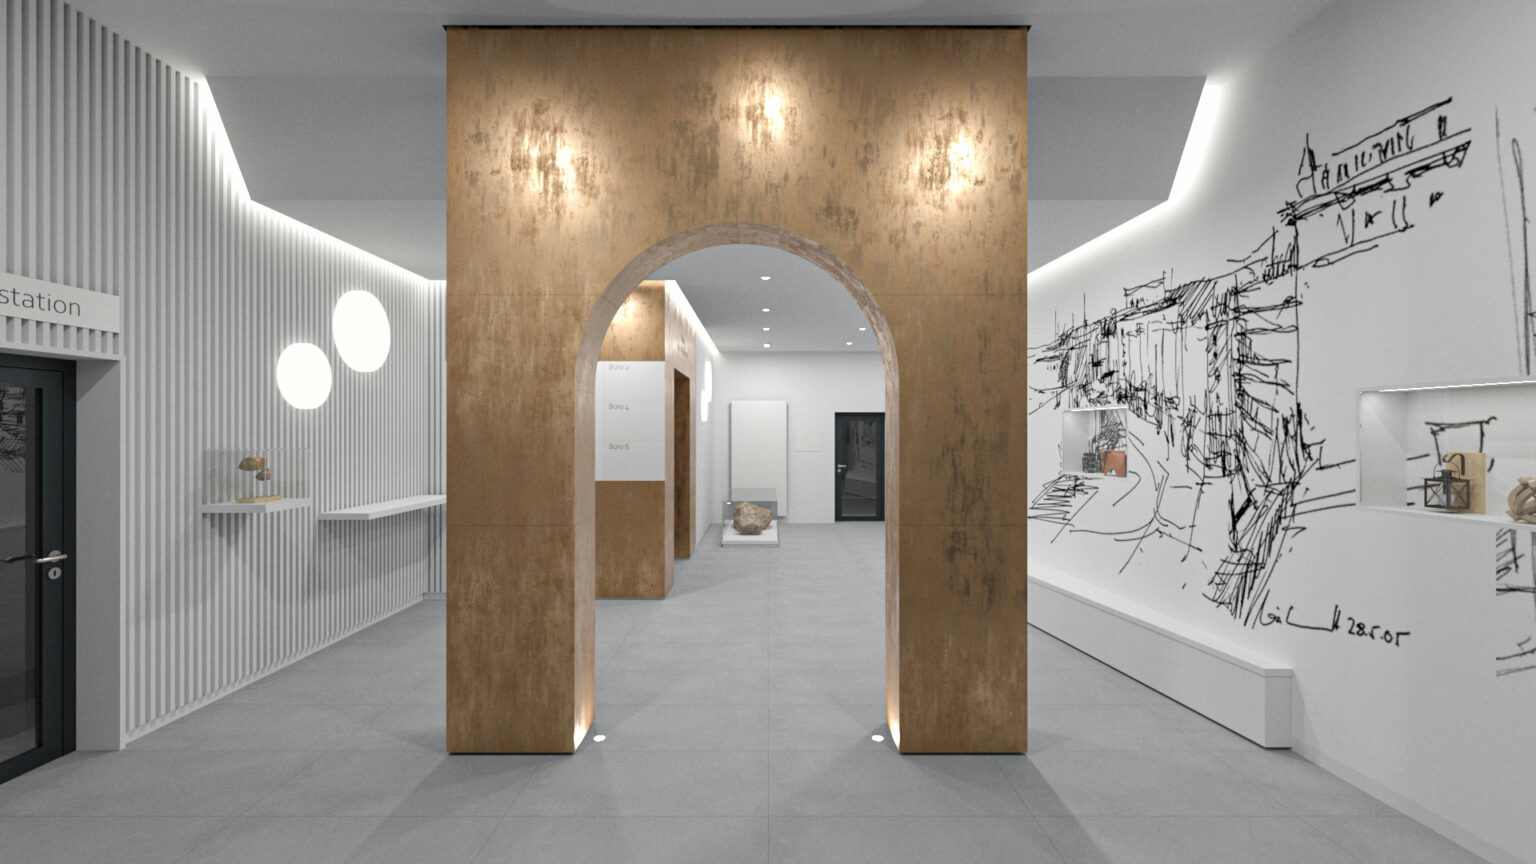 Wohnen im Luisencarré in Magdeburg mit einem Foyer im Turm und eleganter Beleuchtung ein Entwurf der Sattler+Täger Architekten GmbH